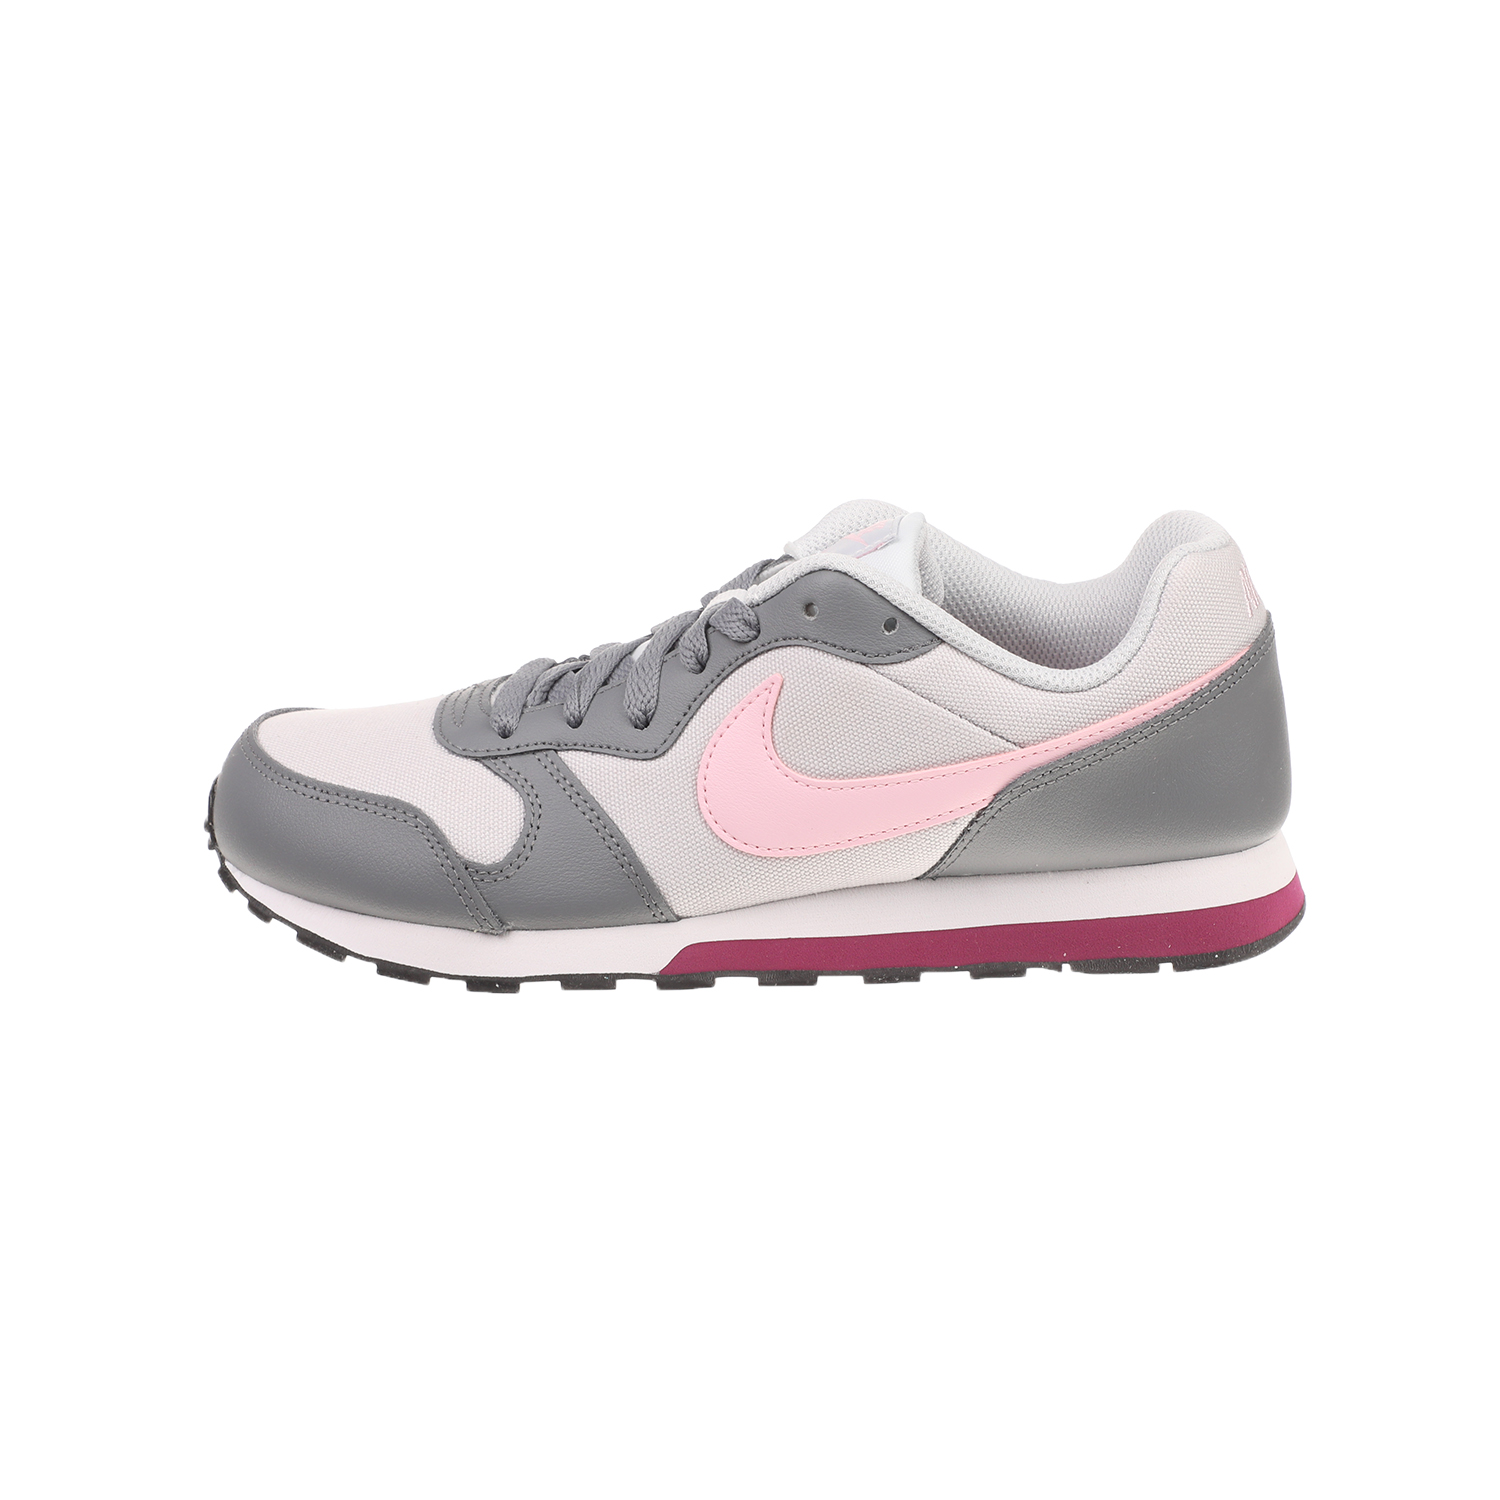 Παιδικά/Girls/Παπούτσια/Αθλητικά NIKE - Παιδικά αθλητικά NIKE MD RUNNER 2 (GS) γκρι ροζ